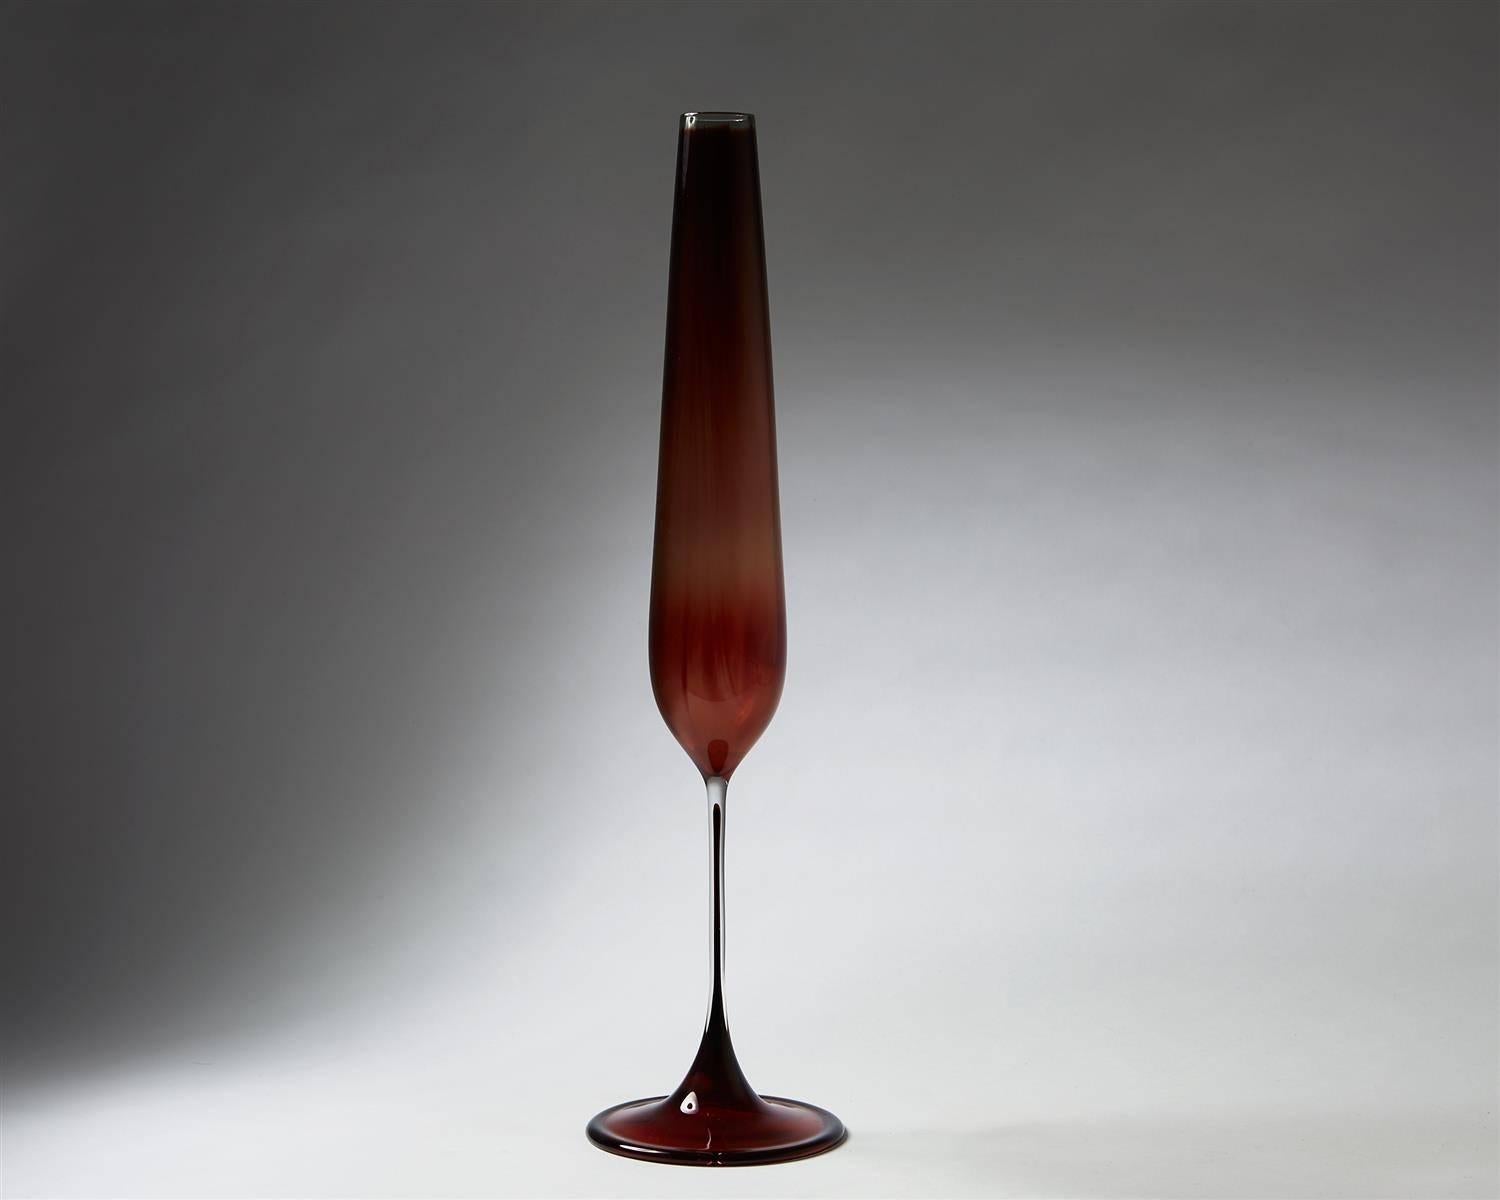 Vase, tulipe. Conçu par Nils Landberg pour Orrefors, Suède, 1957.

Le verre. 

Mesure H 46 cm / 18''.